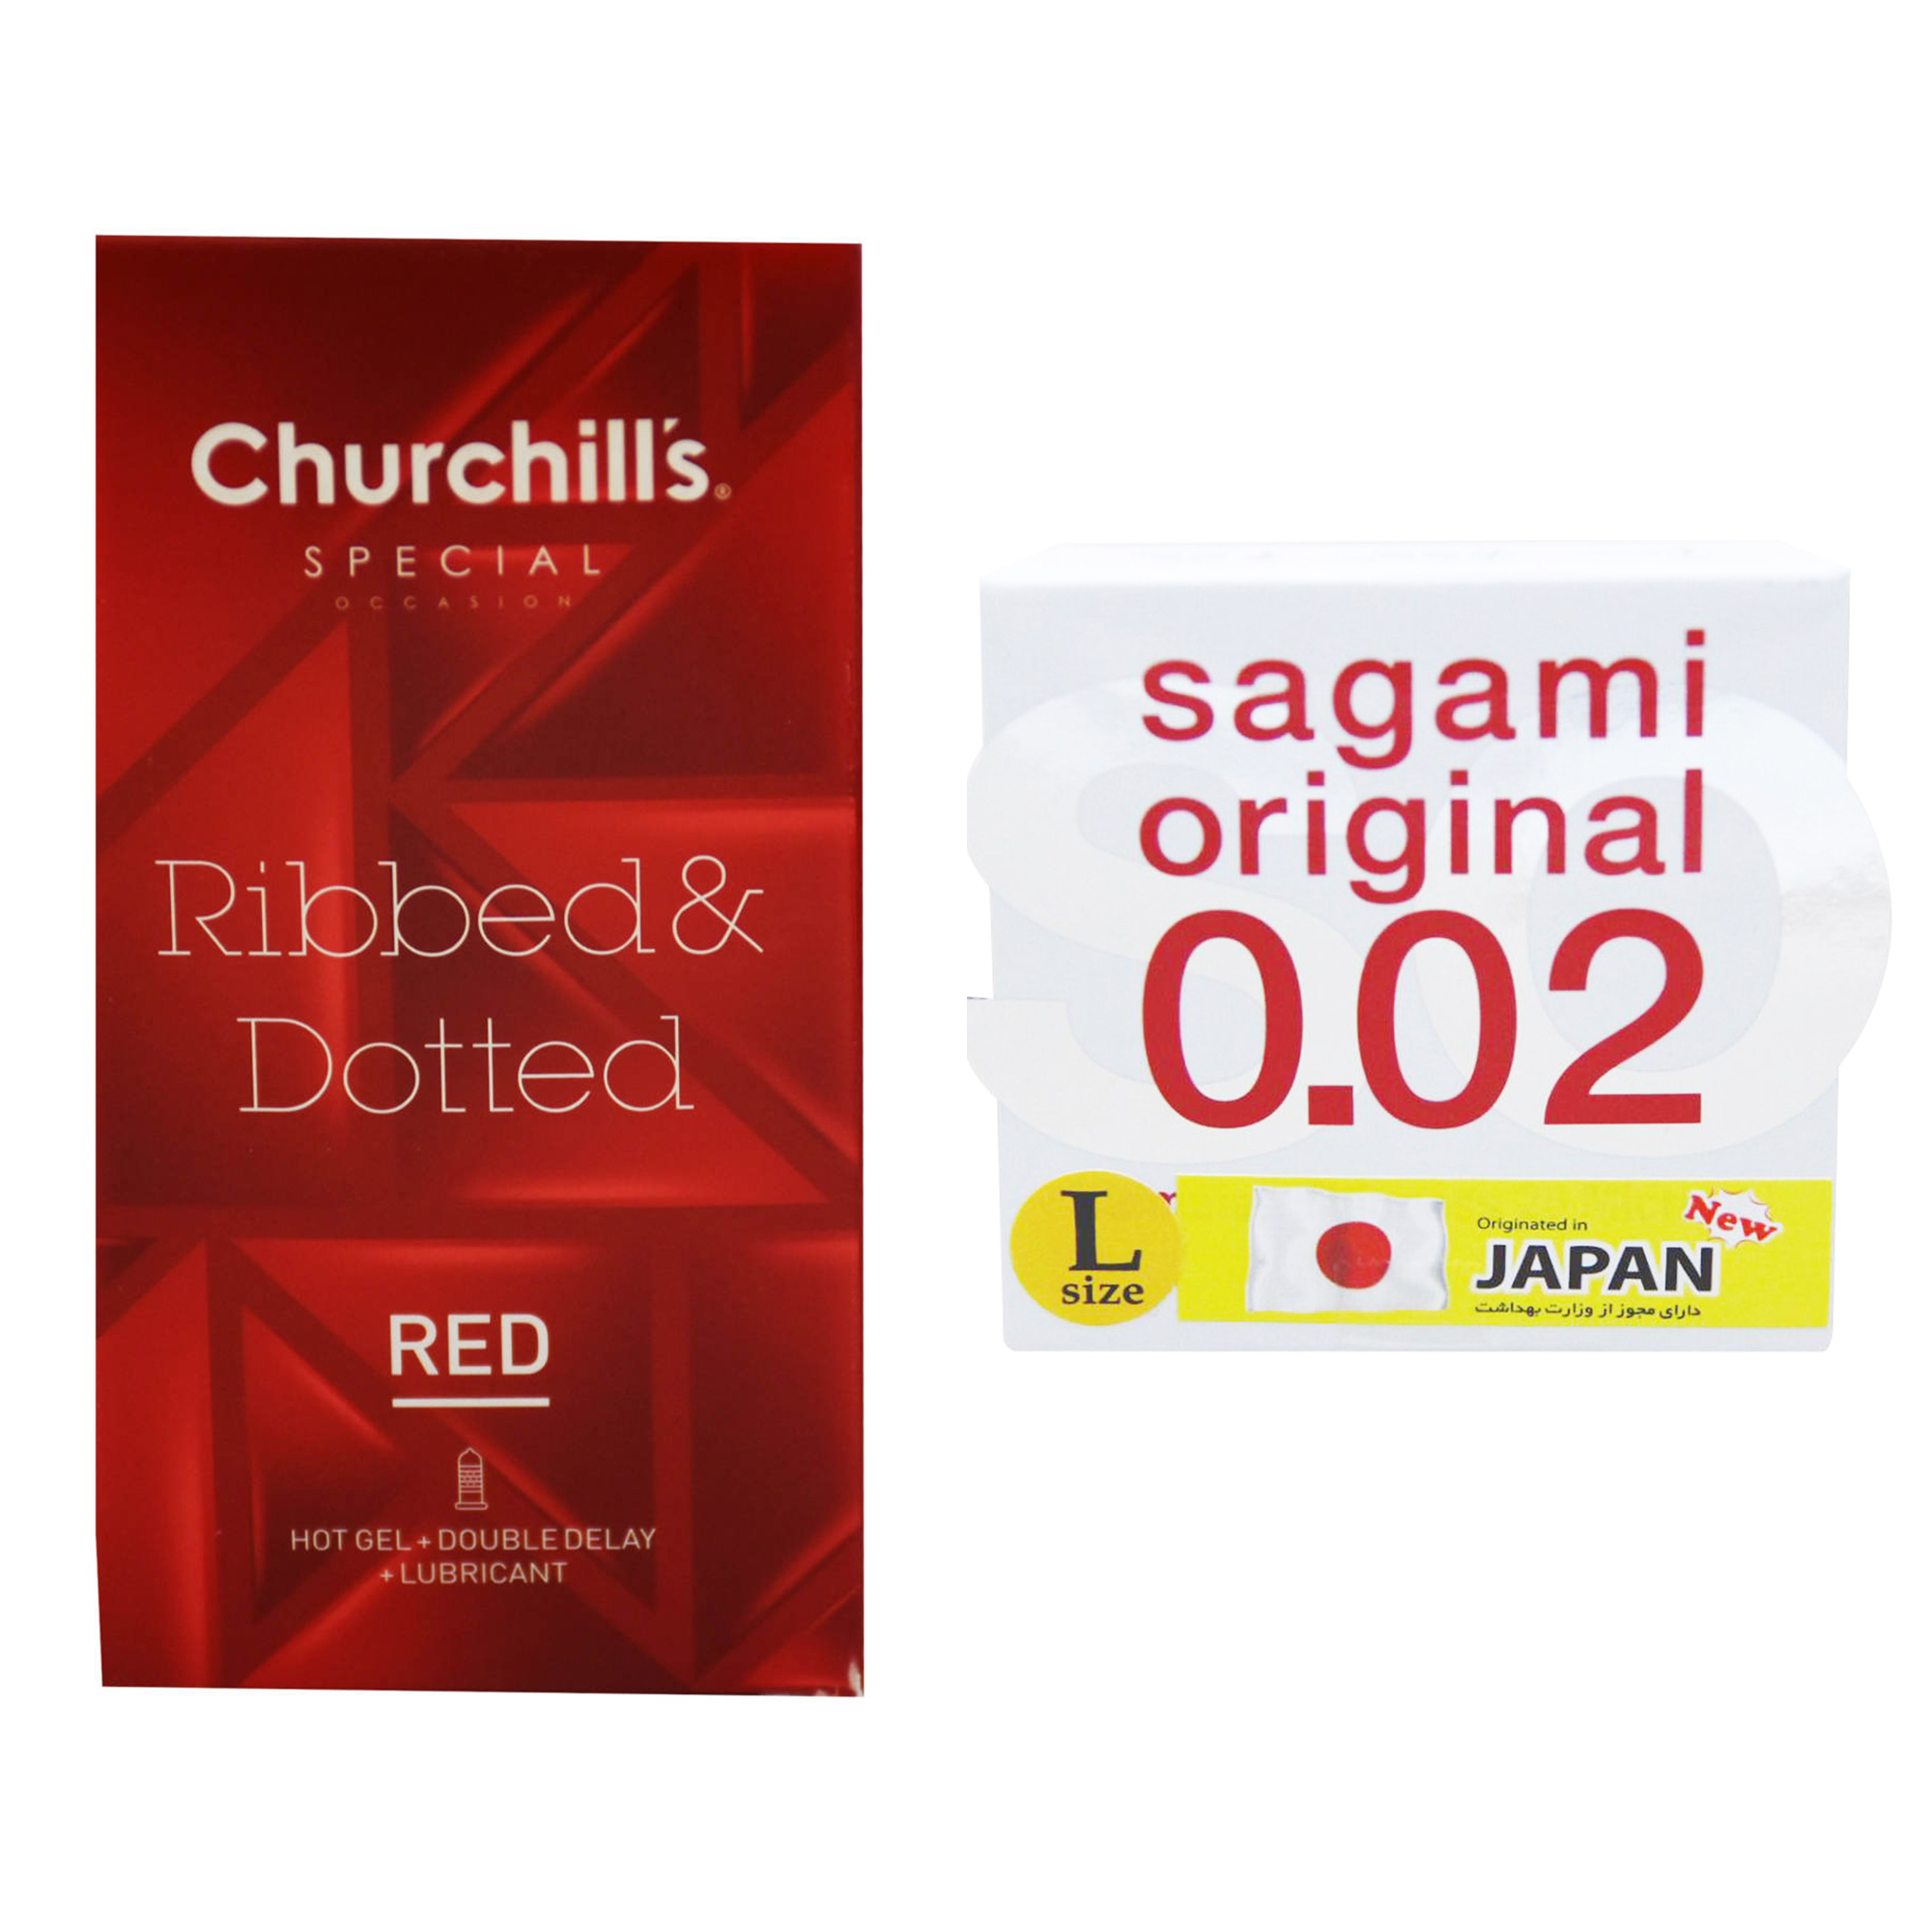 کاندوم چرچیلز مدل Ribbed & Dotted Red بسته 12 عددی به همراه کاندوم ساگامی مدل L